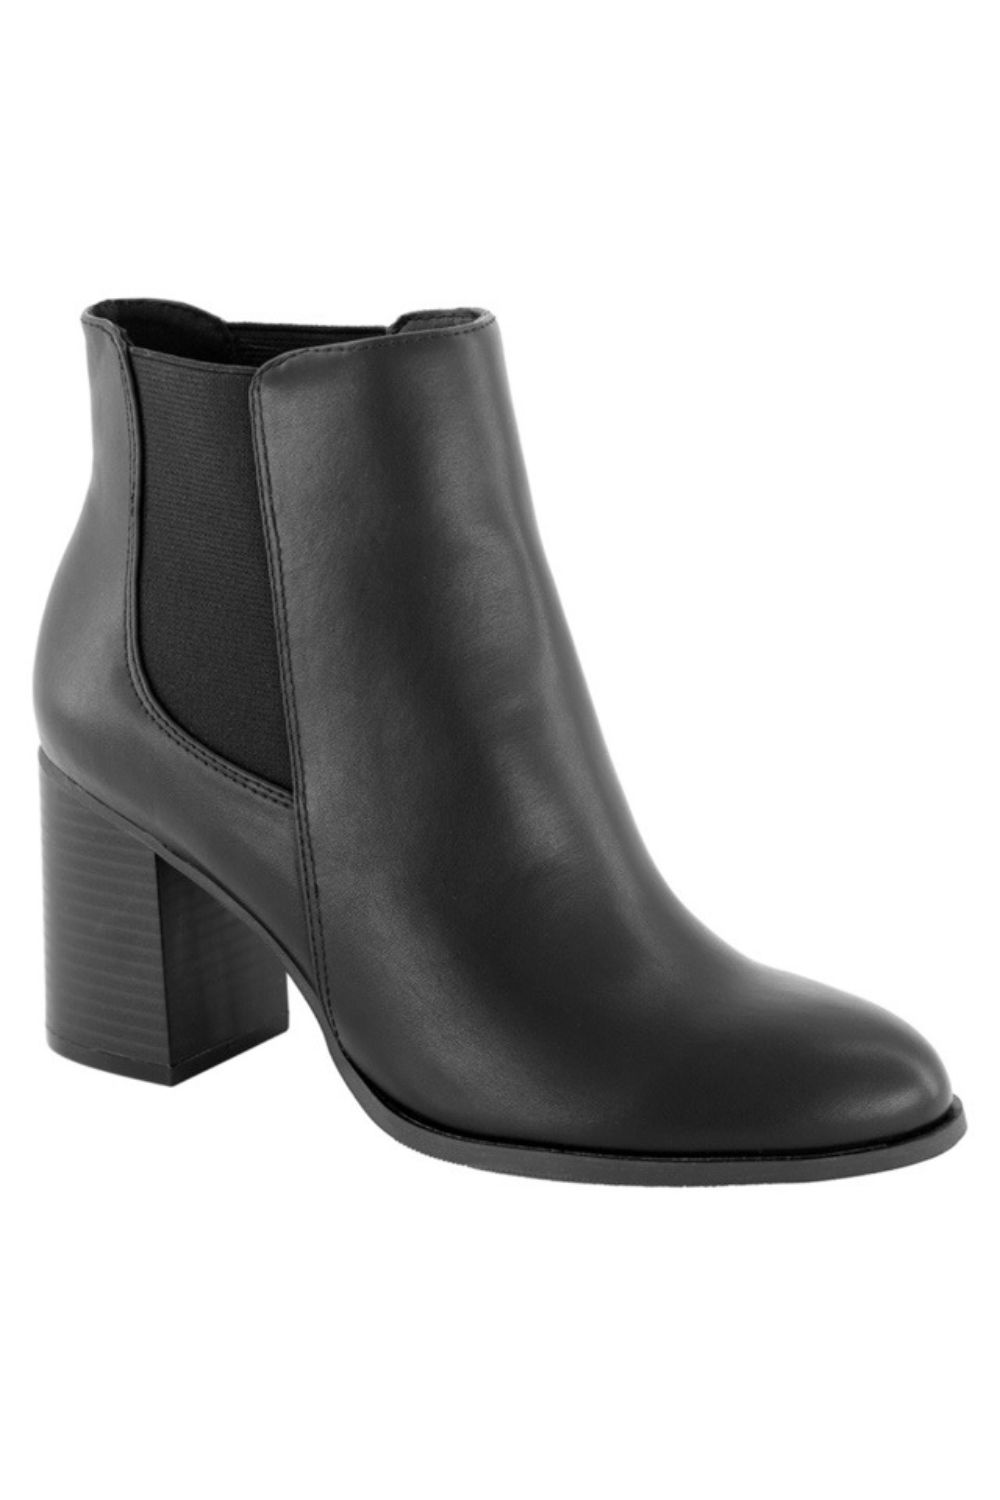 kmart-gusset-high-heel-boots